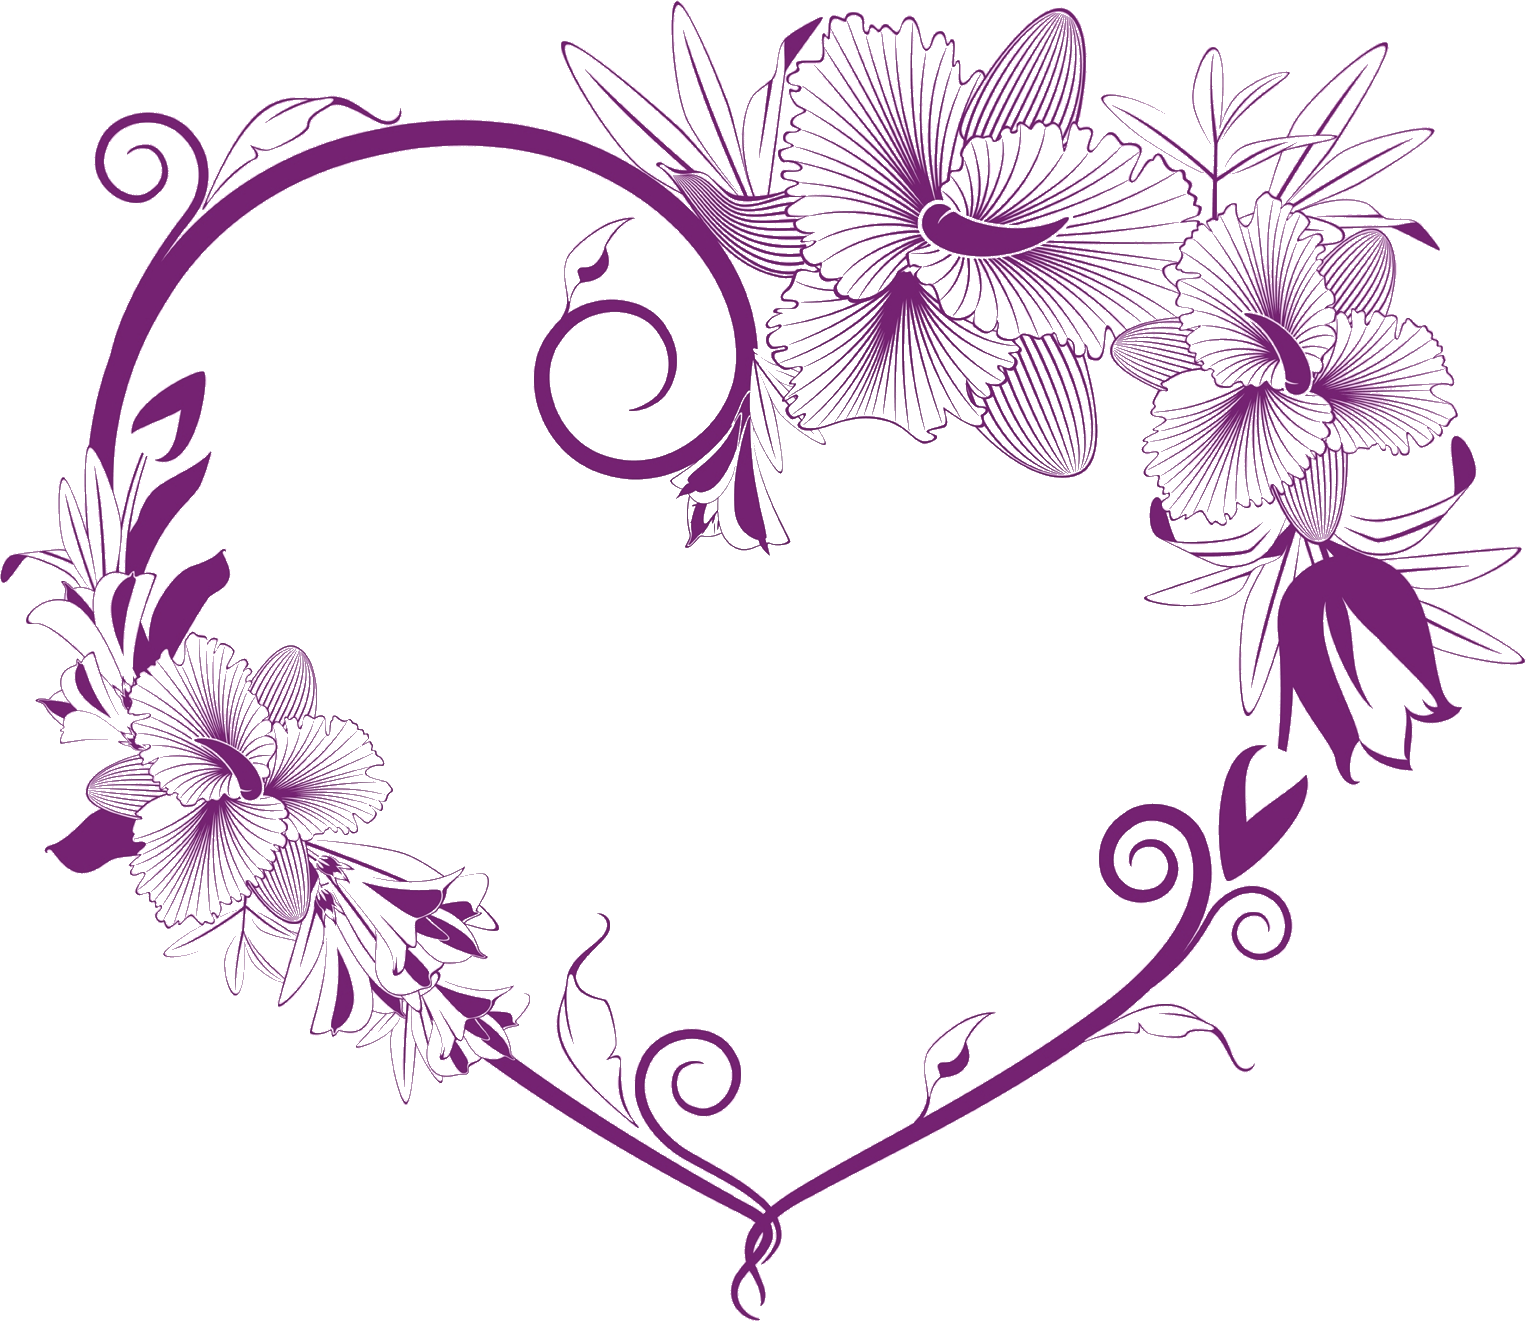 紫色の花のイラスト フリー素材 No 311 紫 縦縞 ハート型